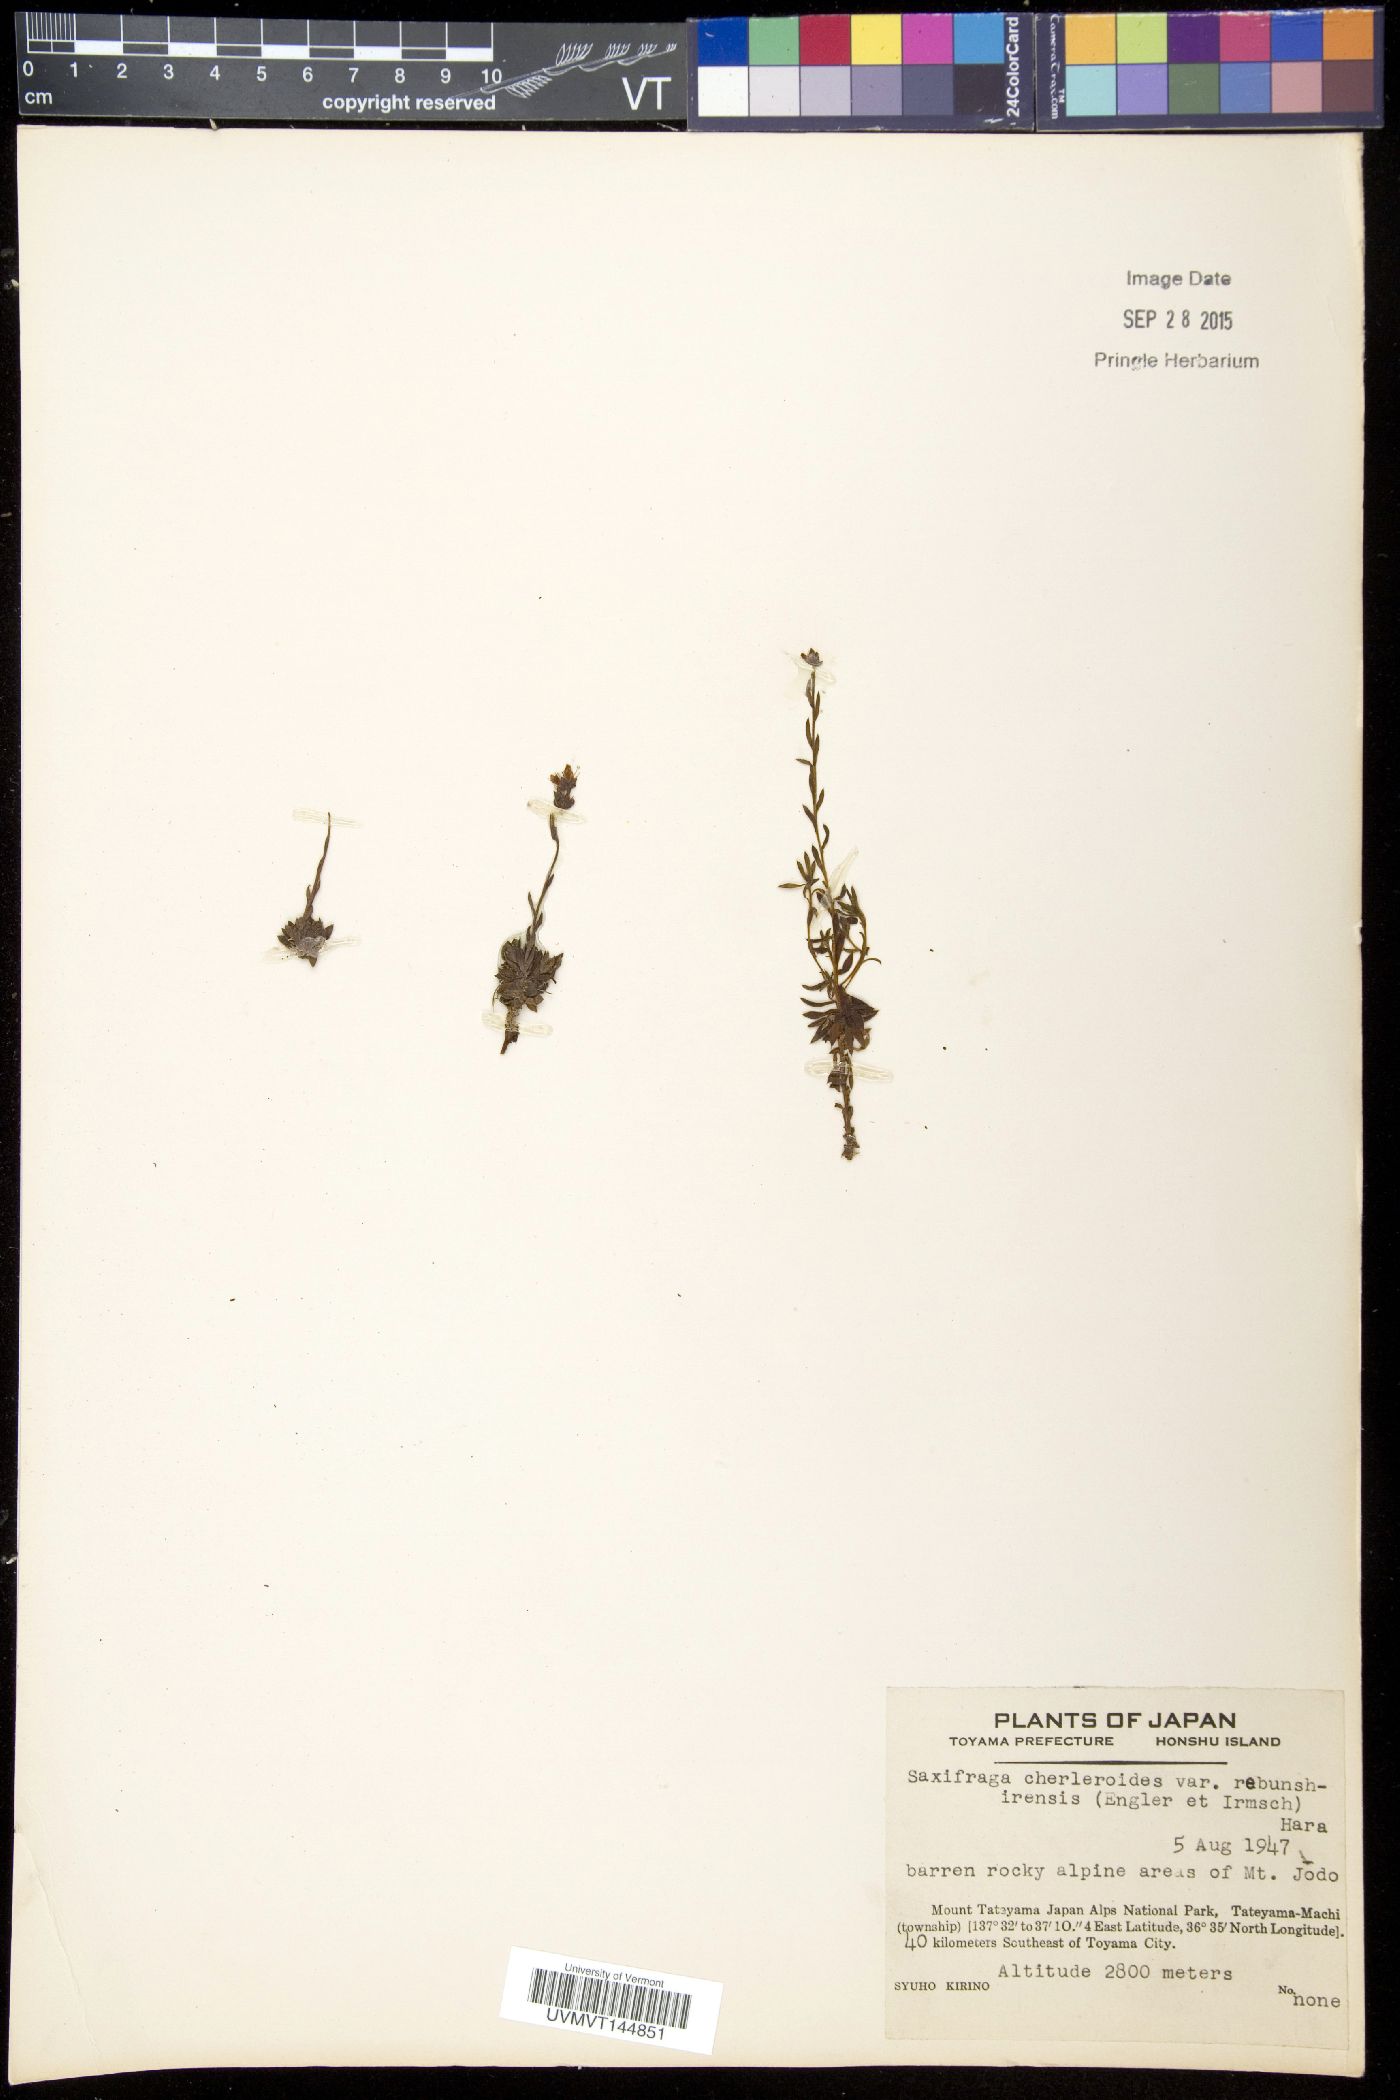 Saxifraga bronchialis var. rebunshirensis image